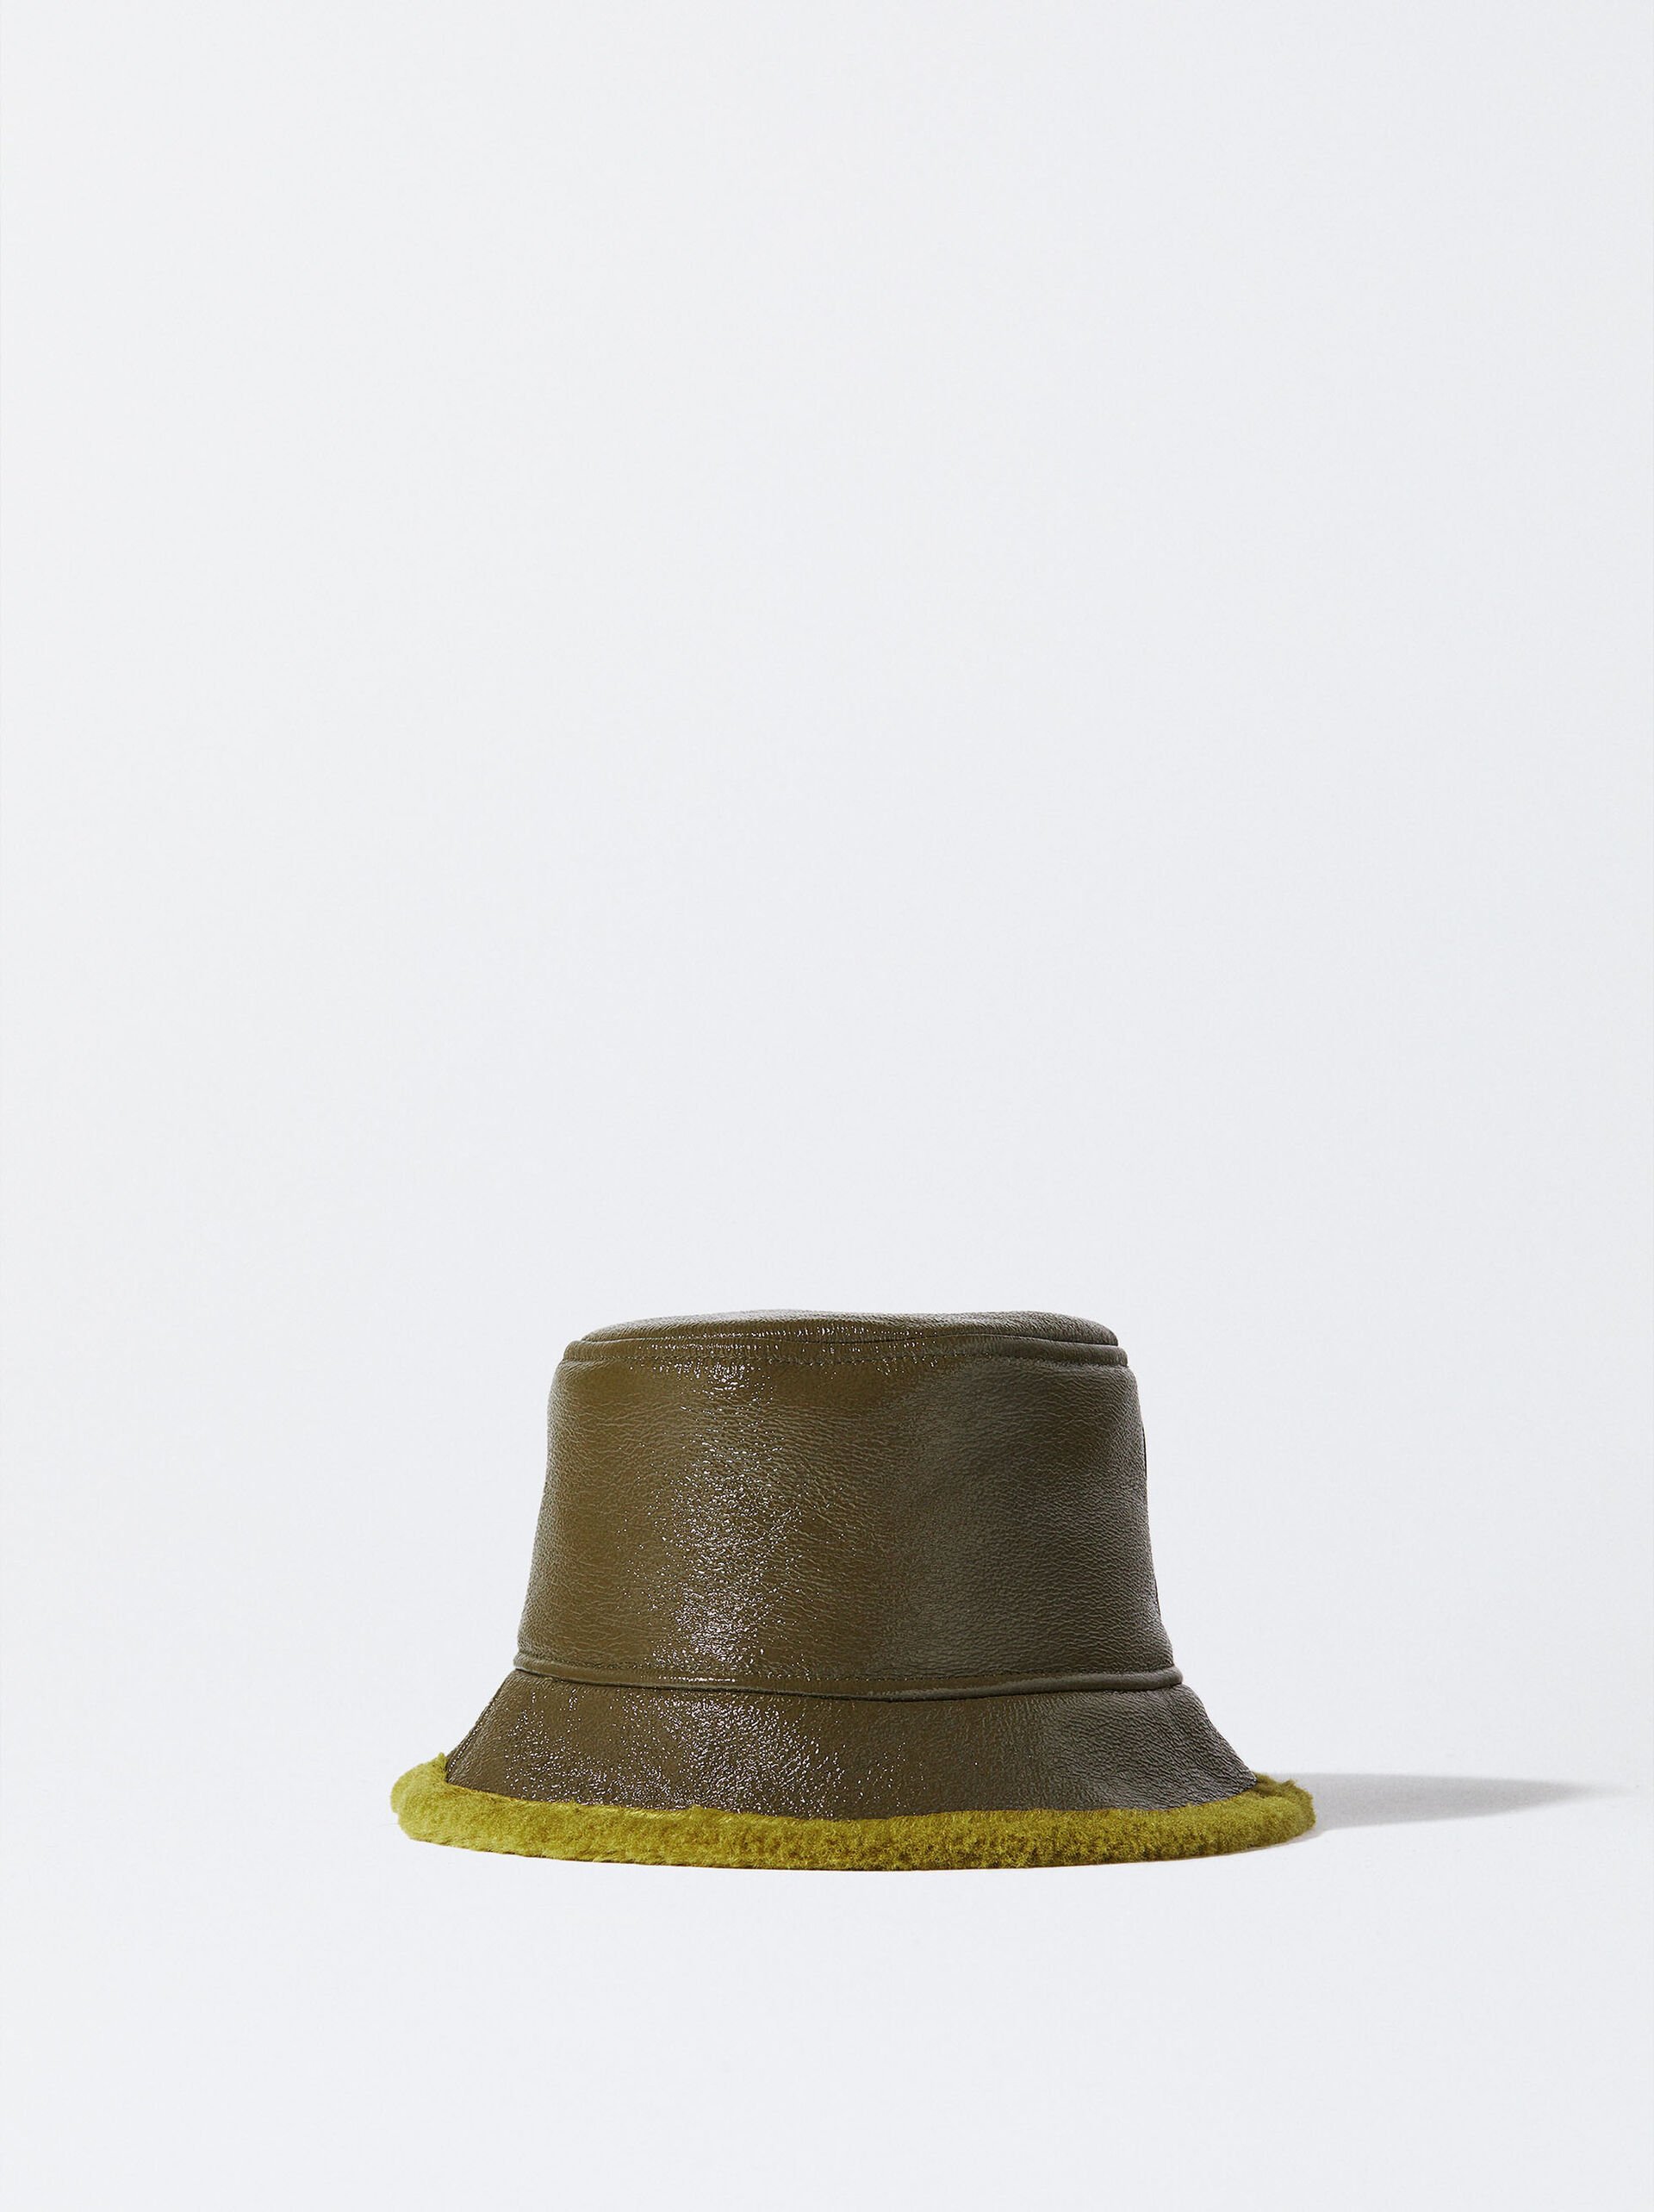 Waterproof Patent Bucket Hat image number 0.0